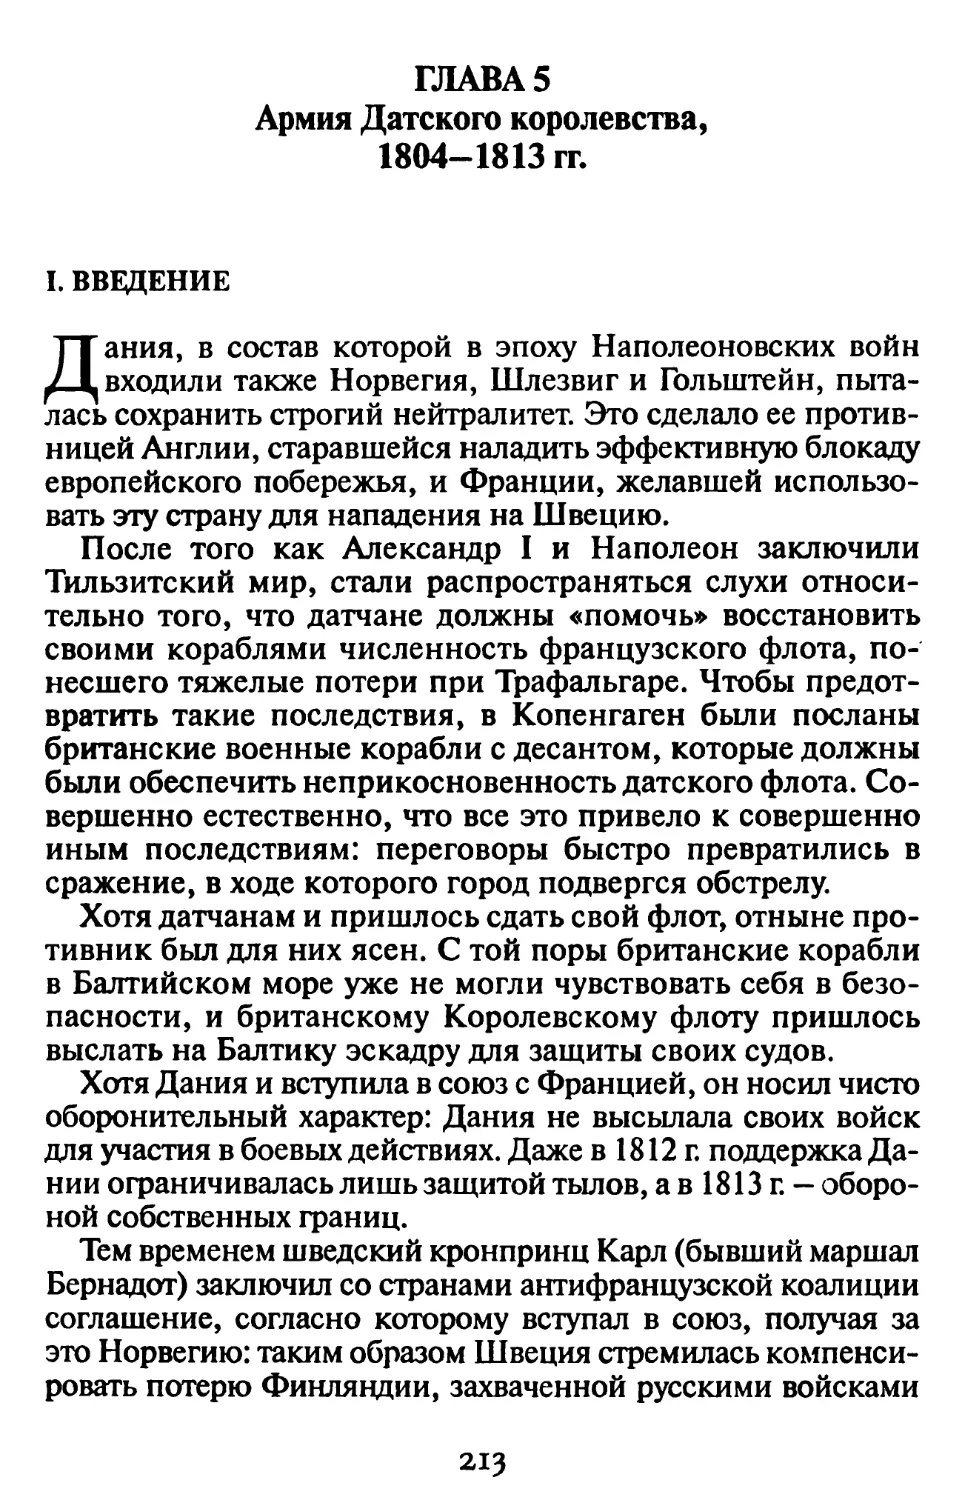 Гл. 5. АРМИЯ ДАТСКОГО КОРОЛЕВСТВА, 1804-1813 гг.